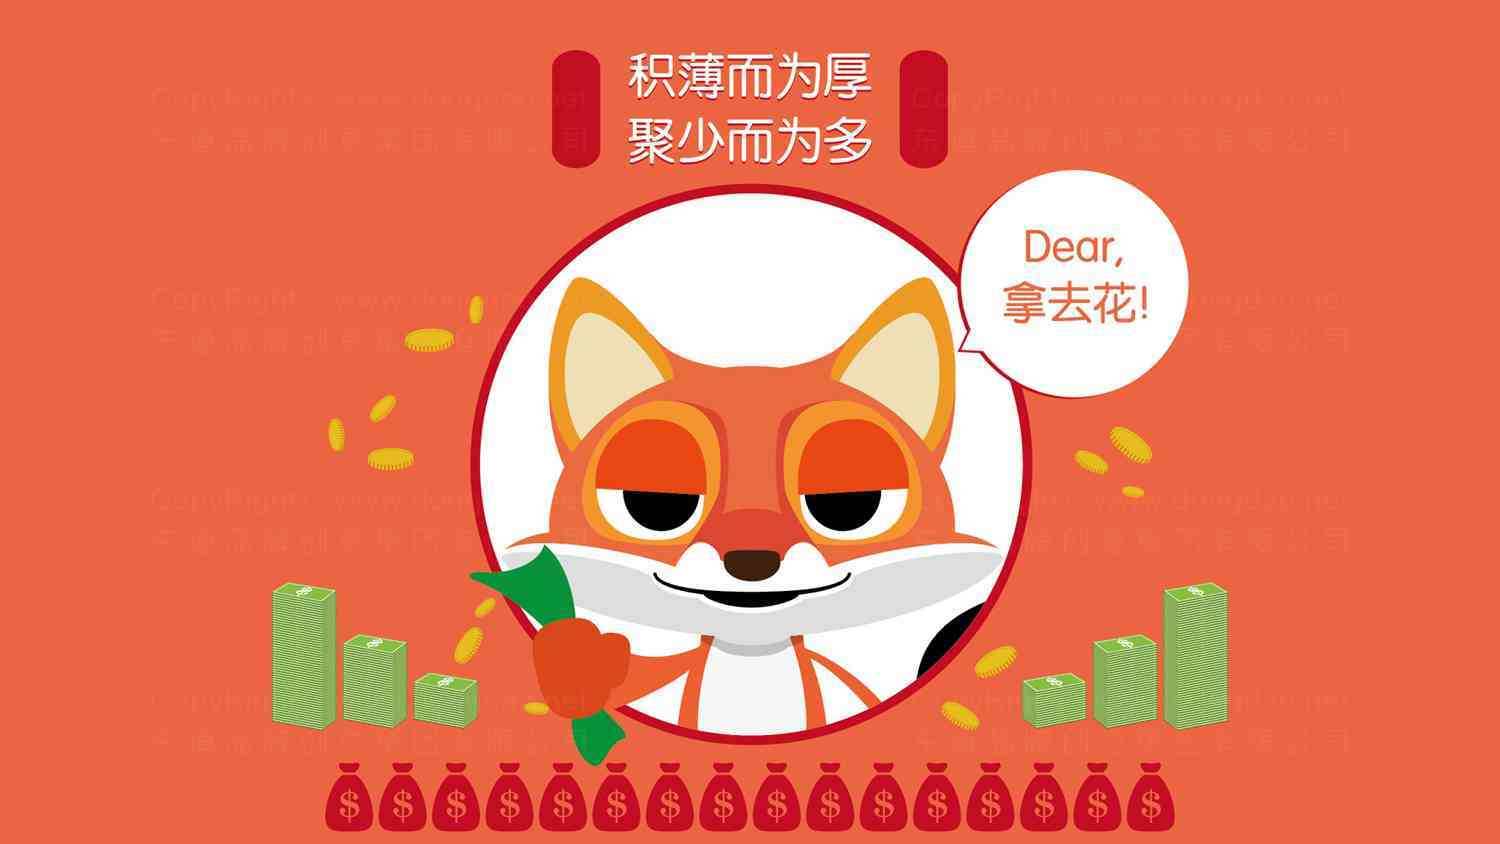 搜狐搜易贷吉祥物设计图片素材